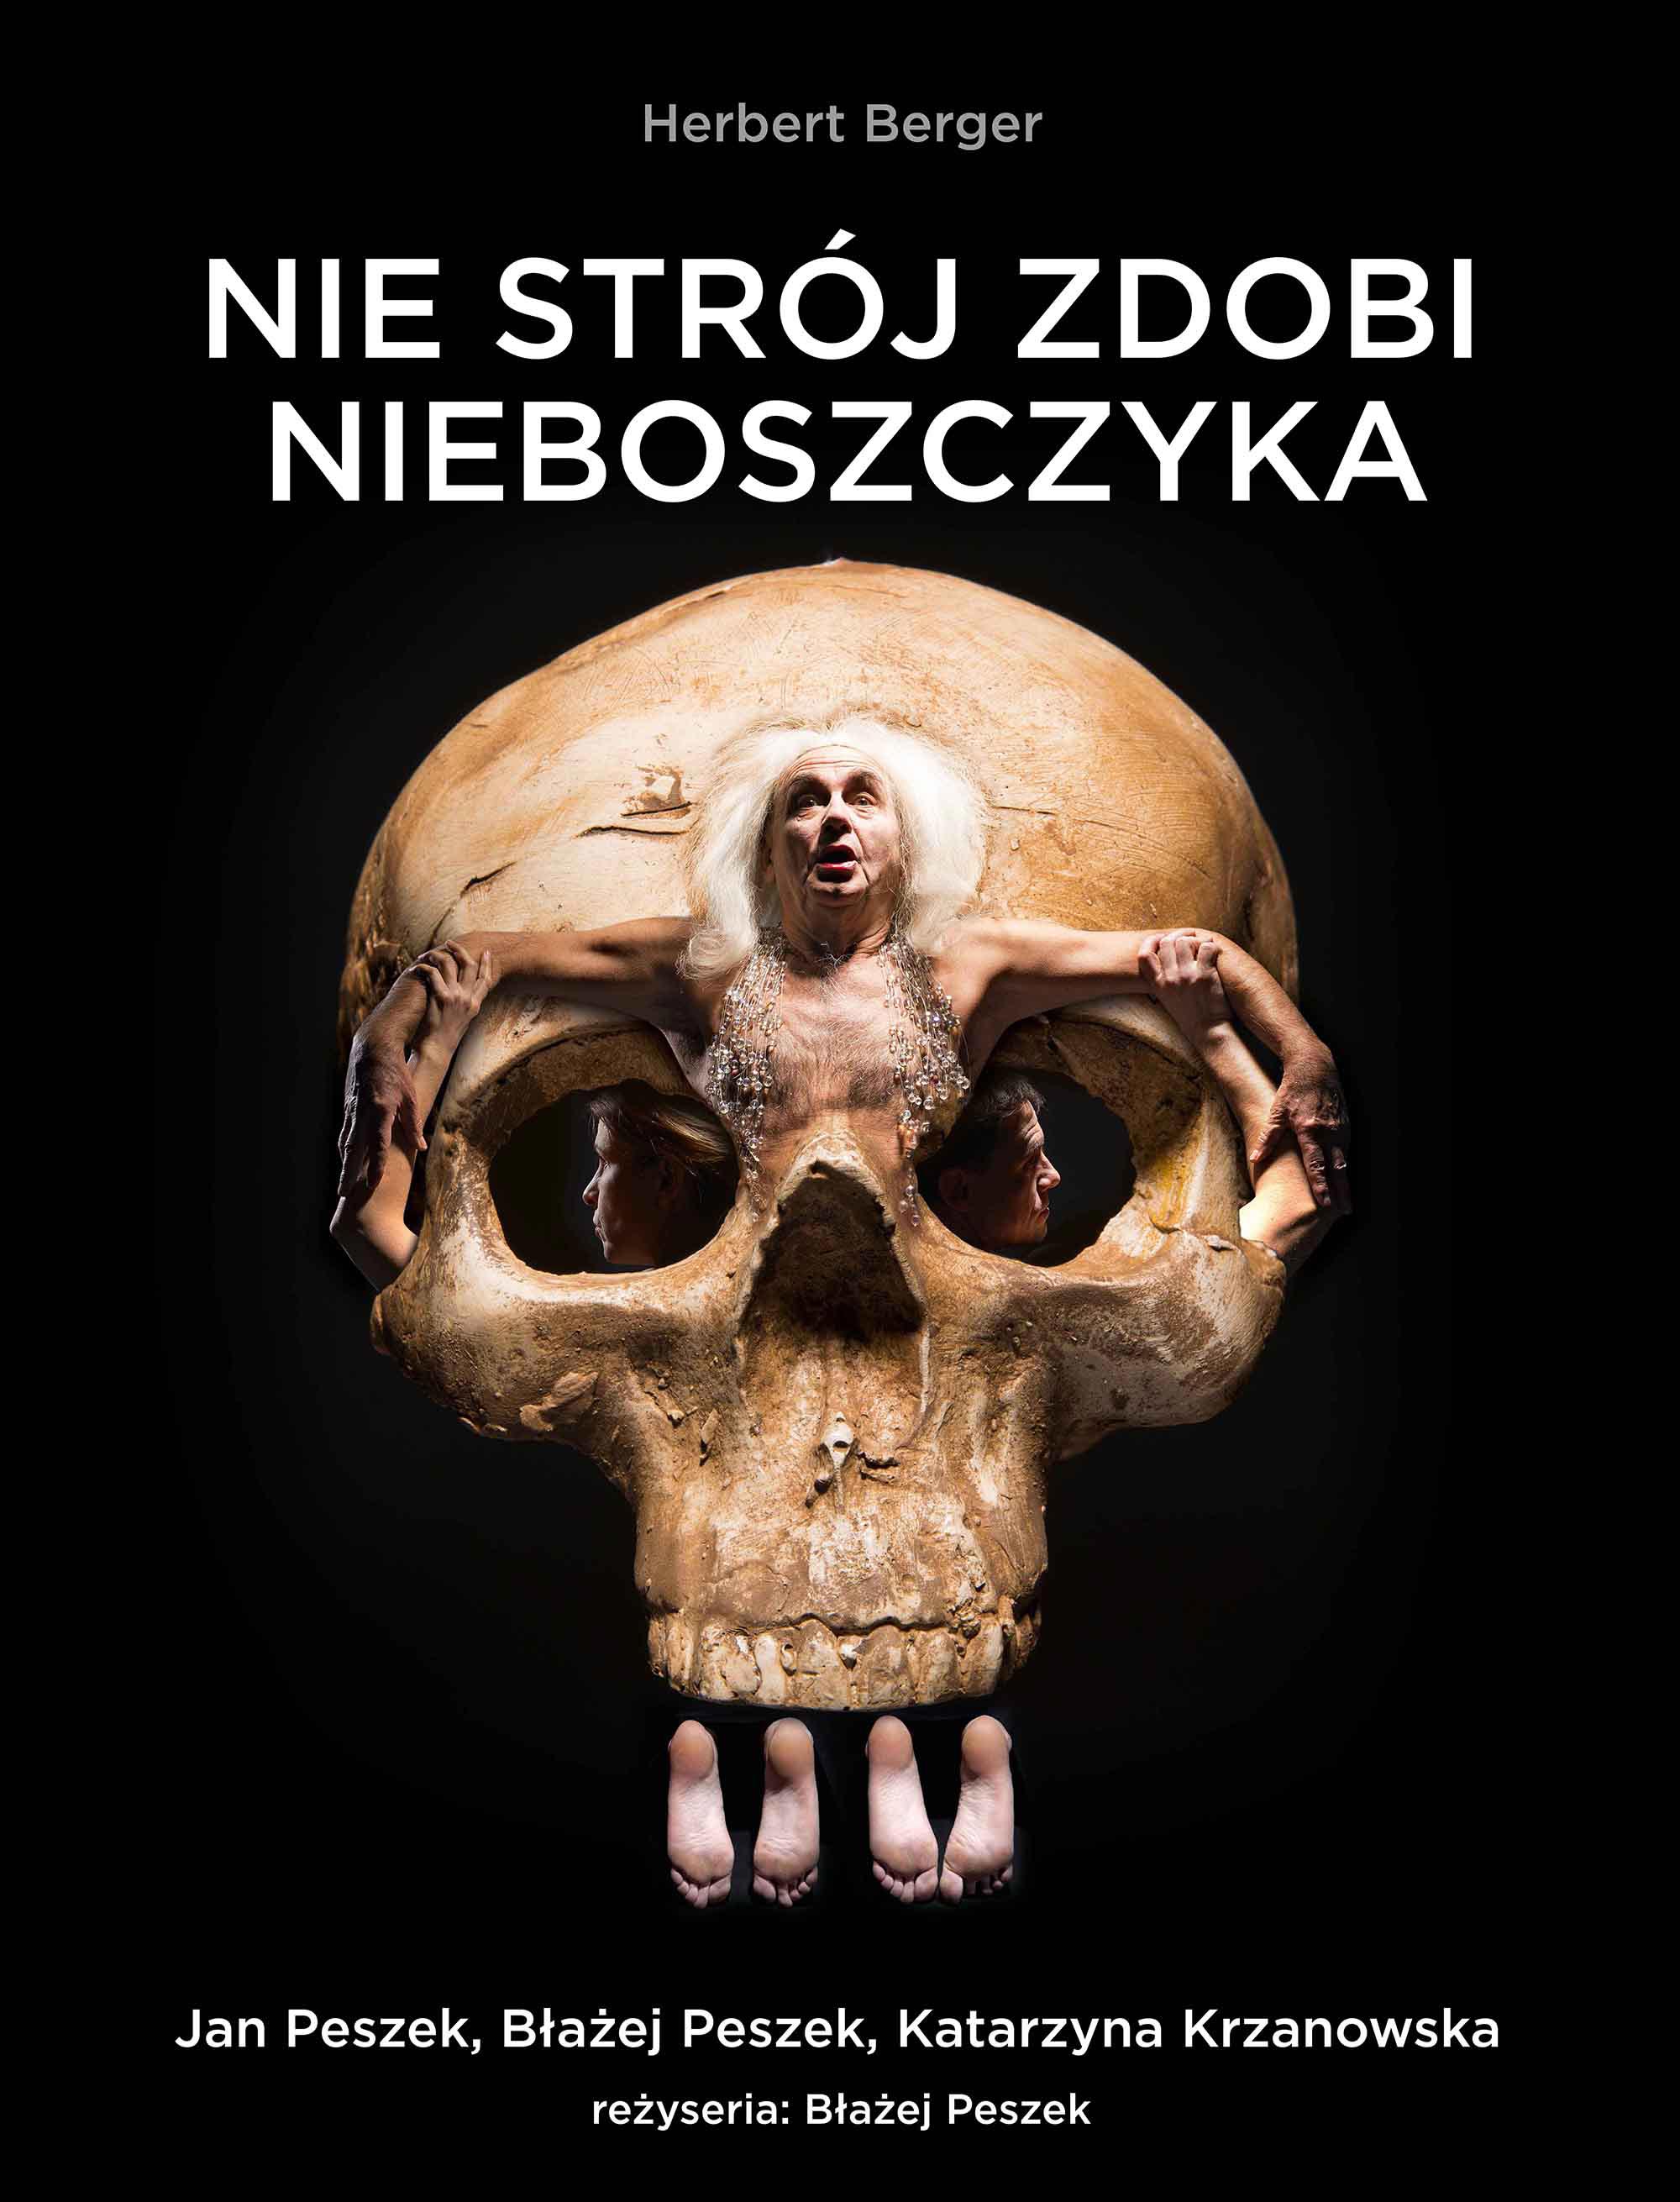 Nie stroj zdobi nieboszczyka Jan Peszek rez Blazej Peszek teatr - fot. Mirosław Mróz Studio22